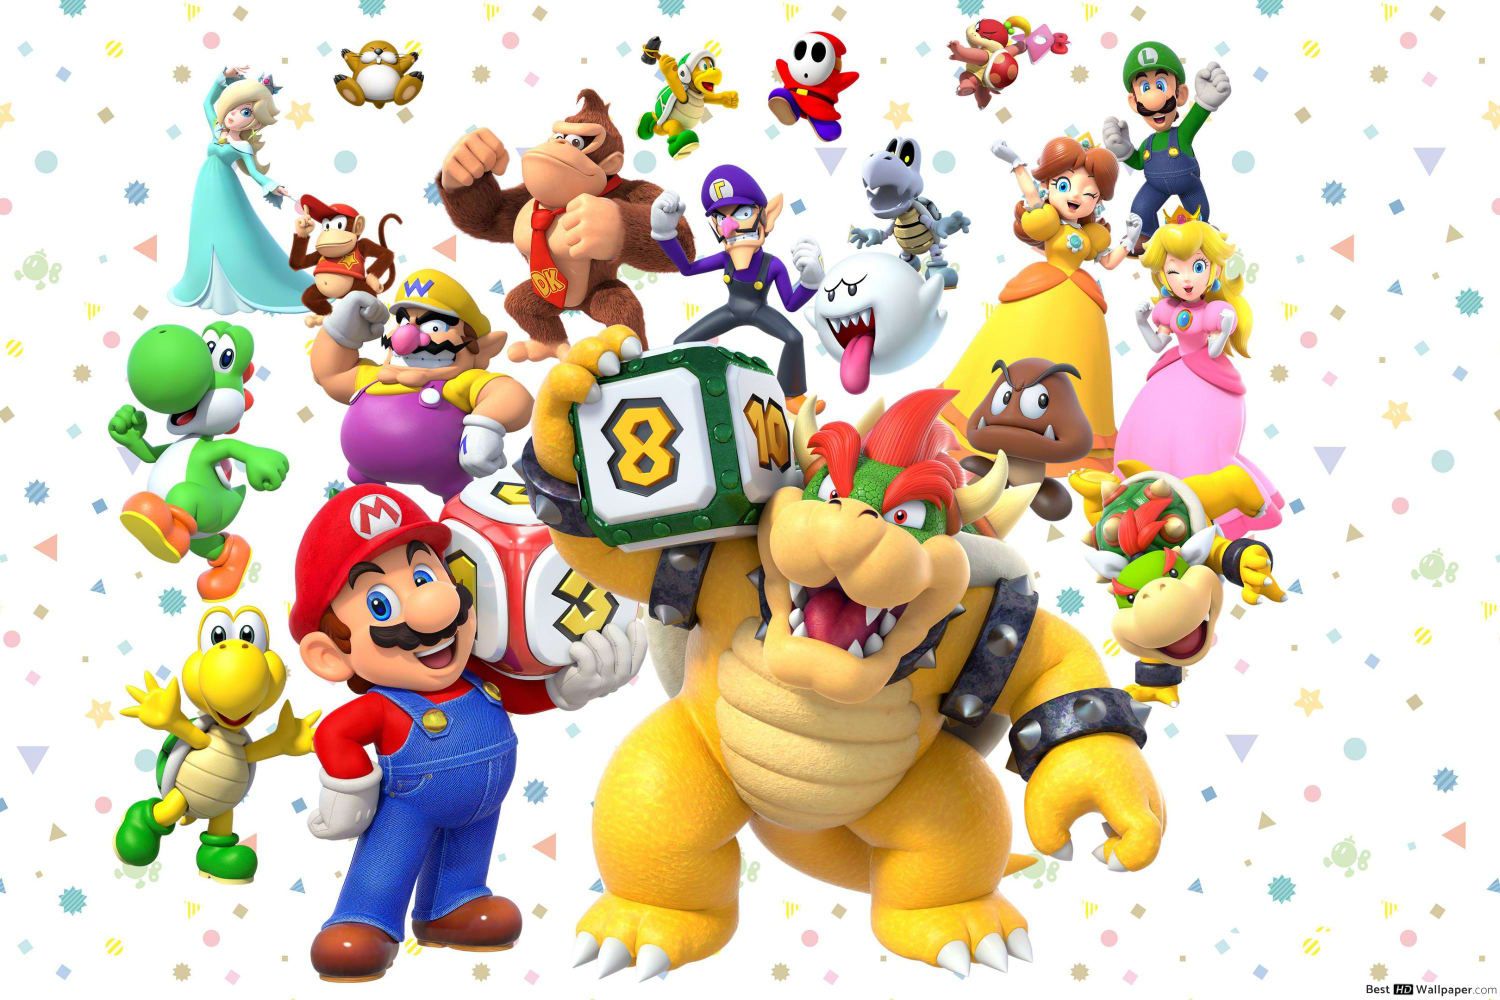 Aniversário de Super Mario: Nintendo anuncia coletânea e novos jogos